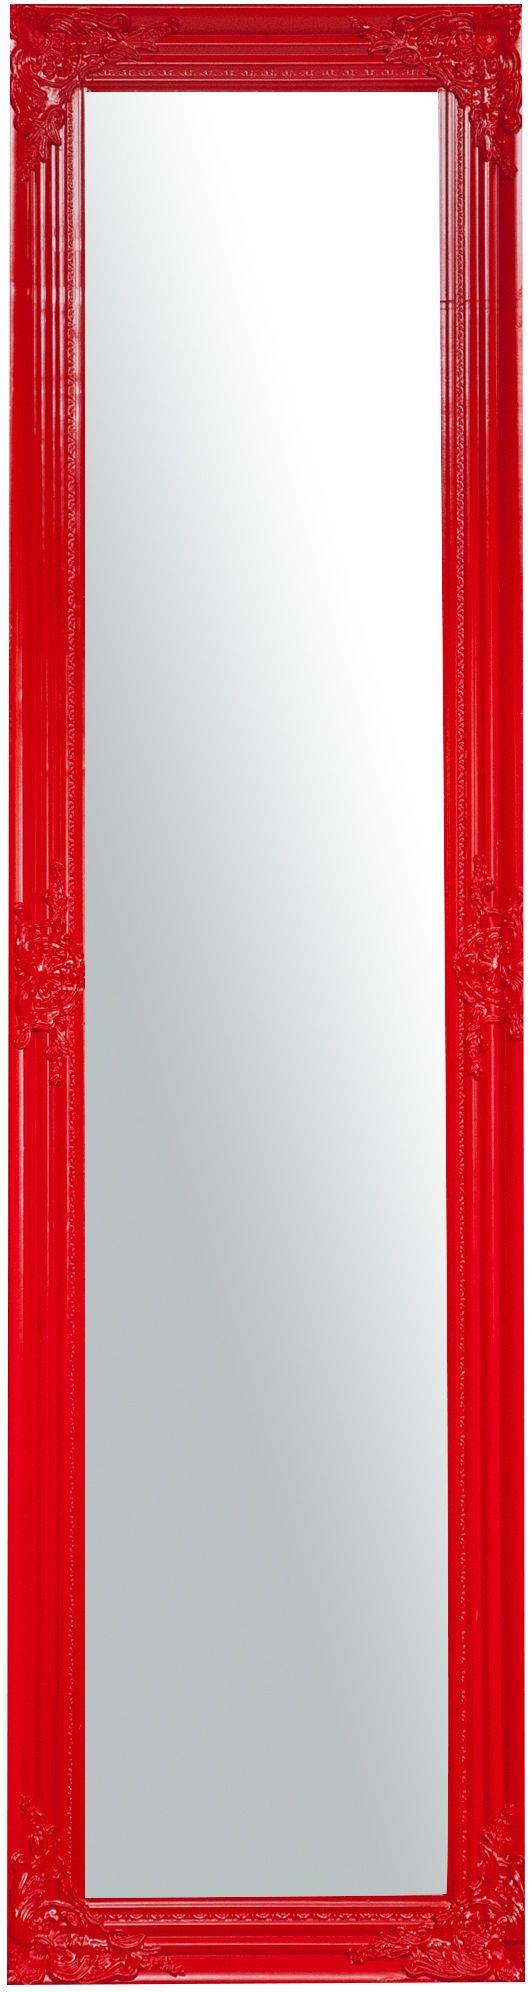 Specchio da terra 164x44x3 cm Made in Italy Specchio lungo con cornice  rosso Specchio da terra camera da letto Specchio shabby - Biscottini - Idee  regalo